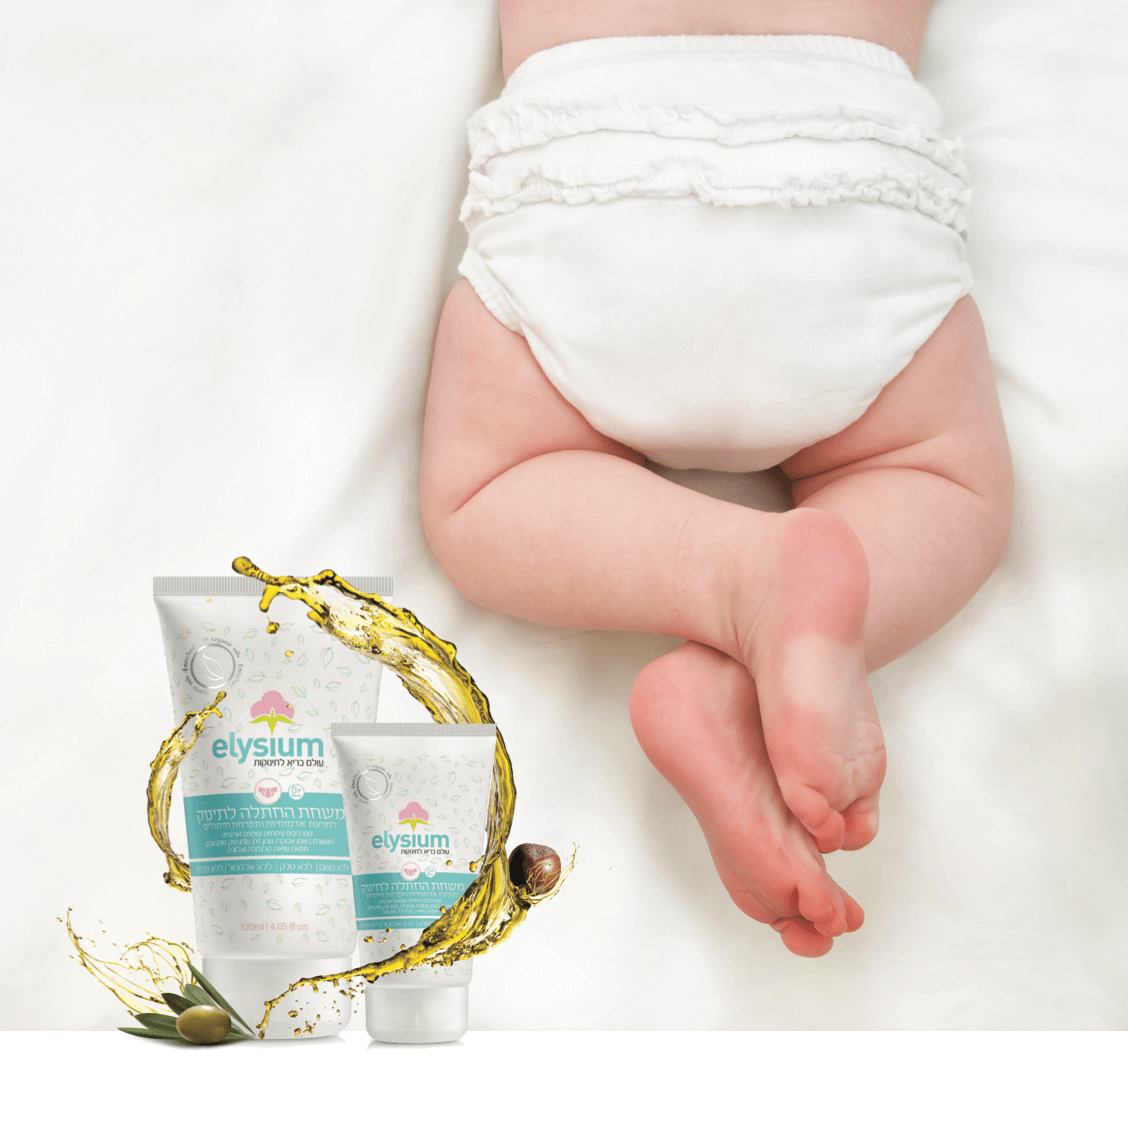 חברת אורגניקזון משיקה: סדרת מוצרי טיפוח אורגנית לתינוקות